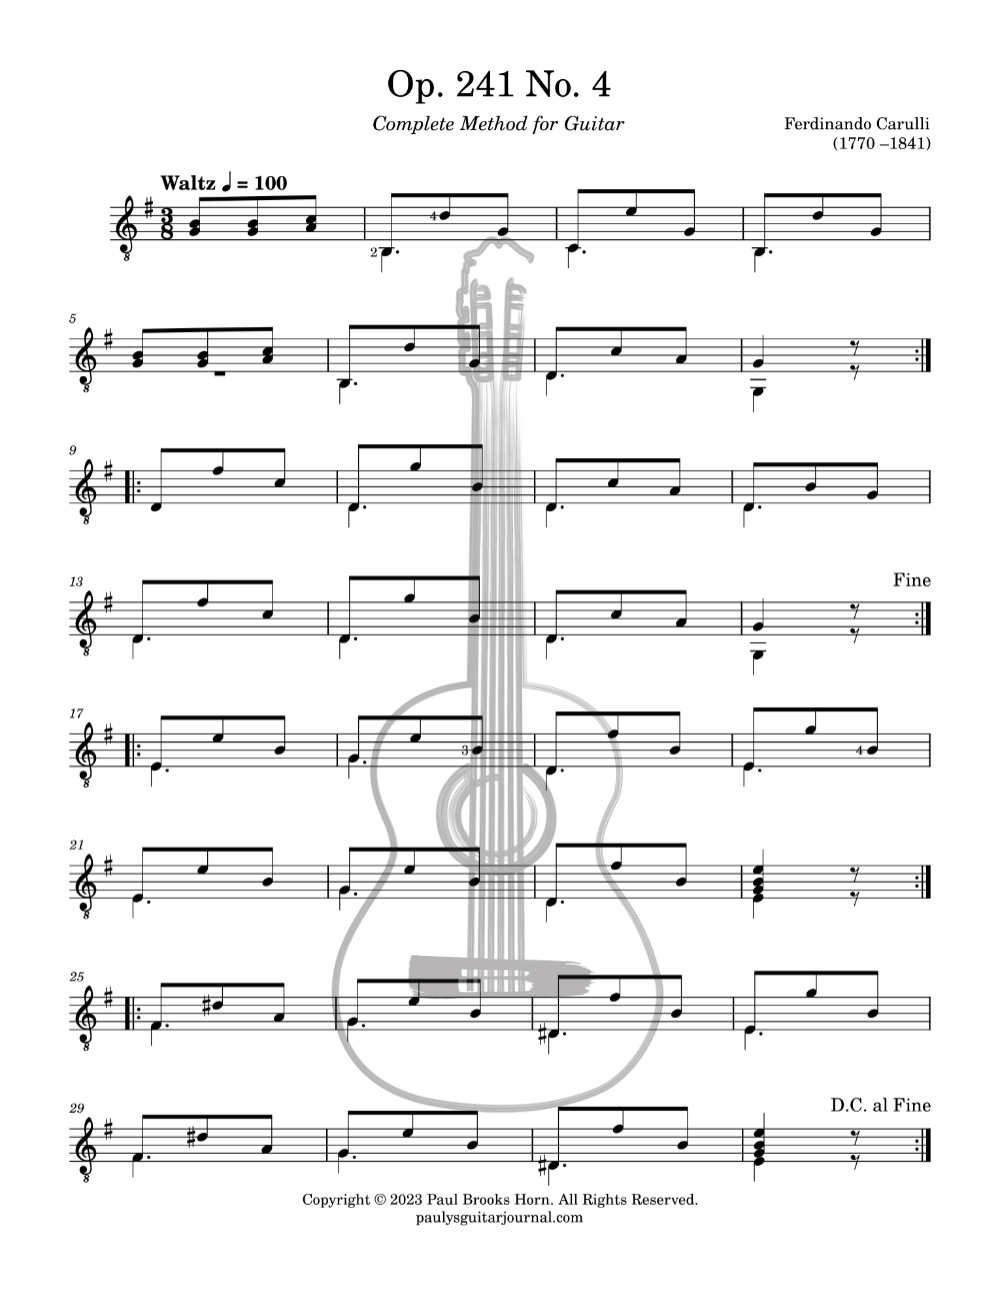 Op. 241 No. 4 by Ferdinando Carulli